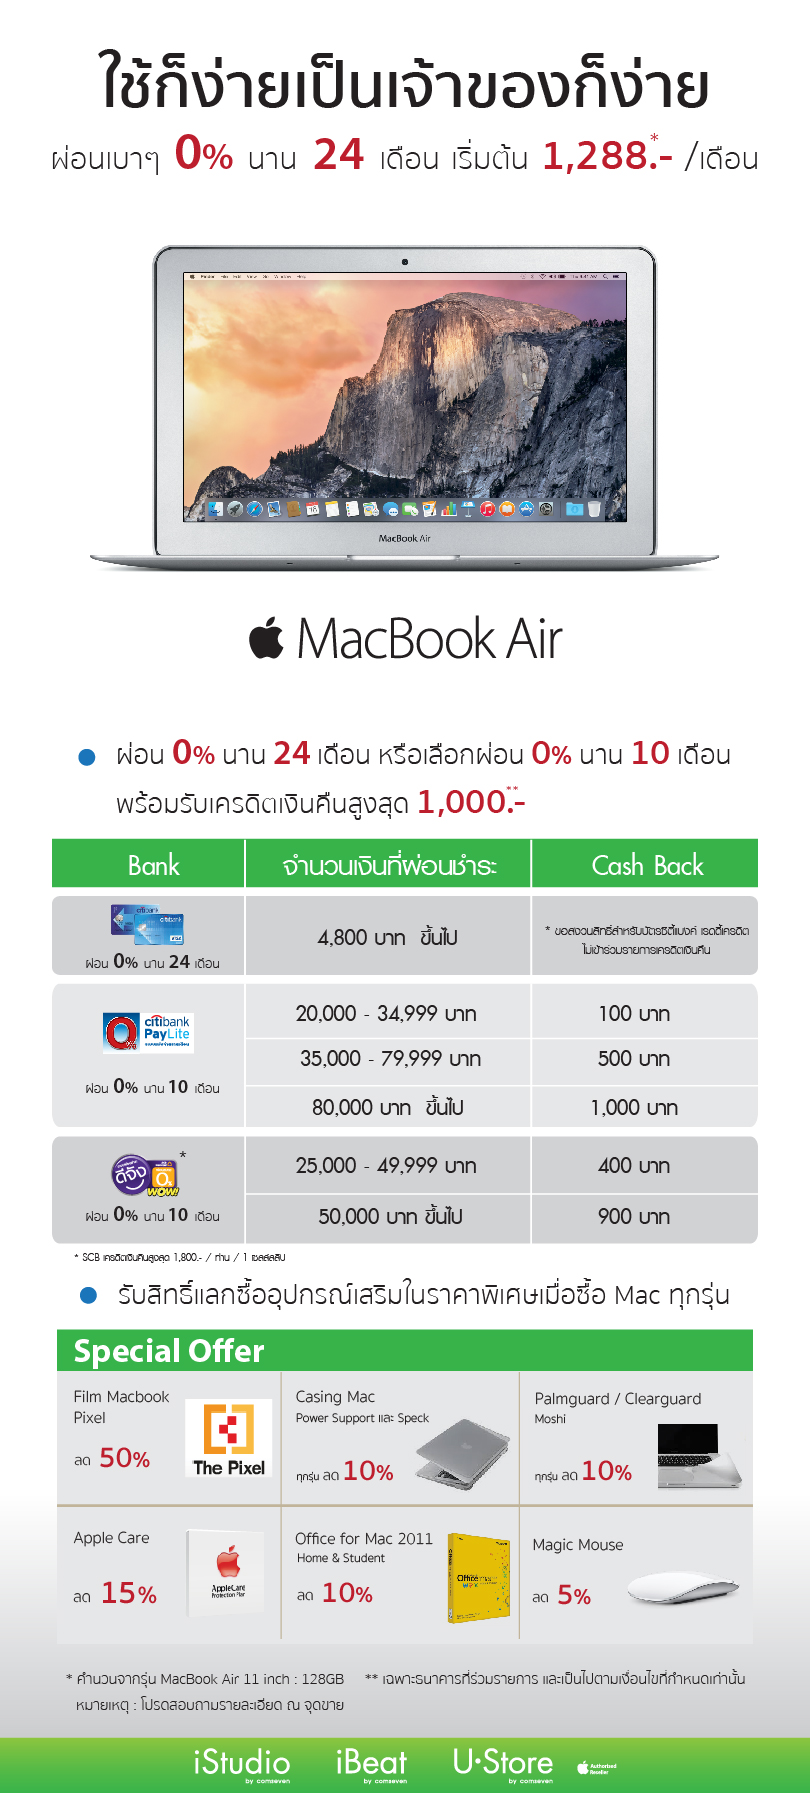 [PR] Mac ใช้ก็ง่ายเป็นเจ้าของก็ง่าย ผ่อนสบาย 0% นาน 24 เดือน หรือเลือกผ่อน 0% นาน 10 เดือน พร้อมรับ Cash Back